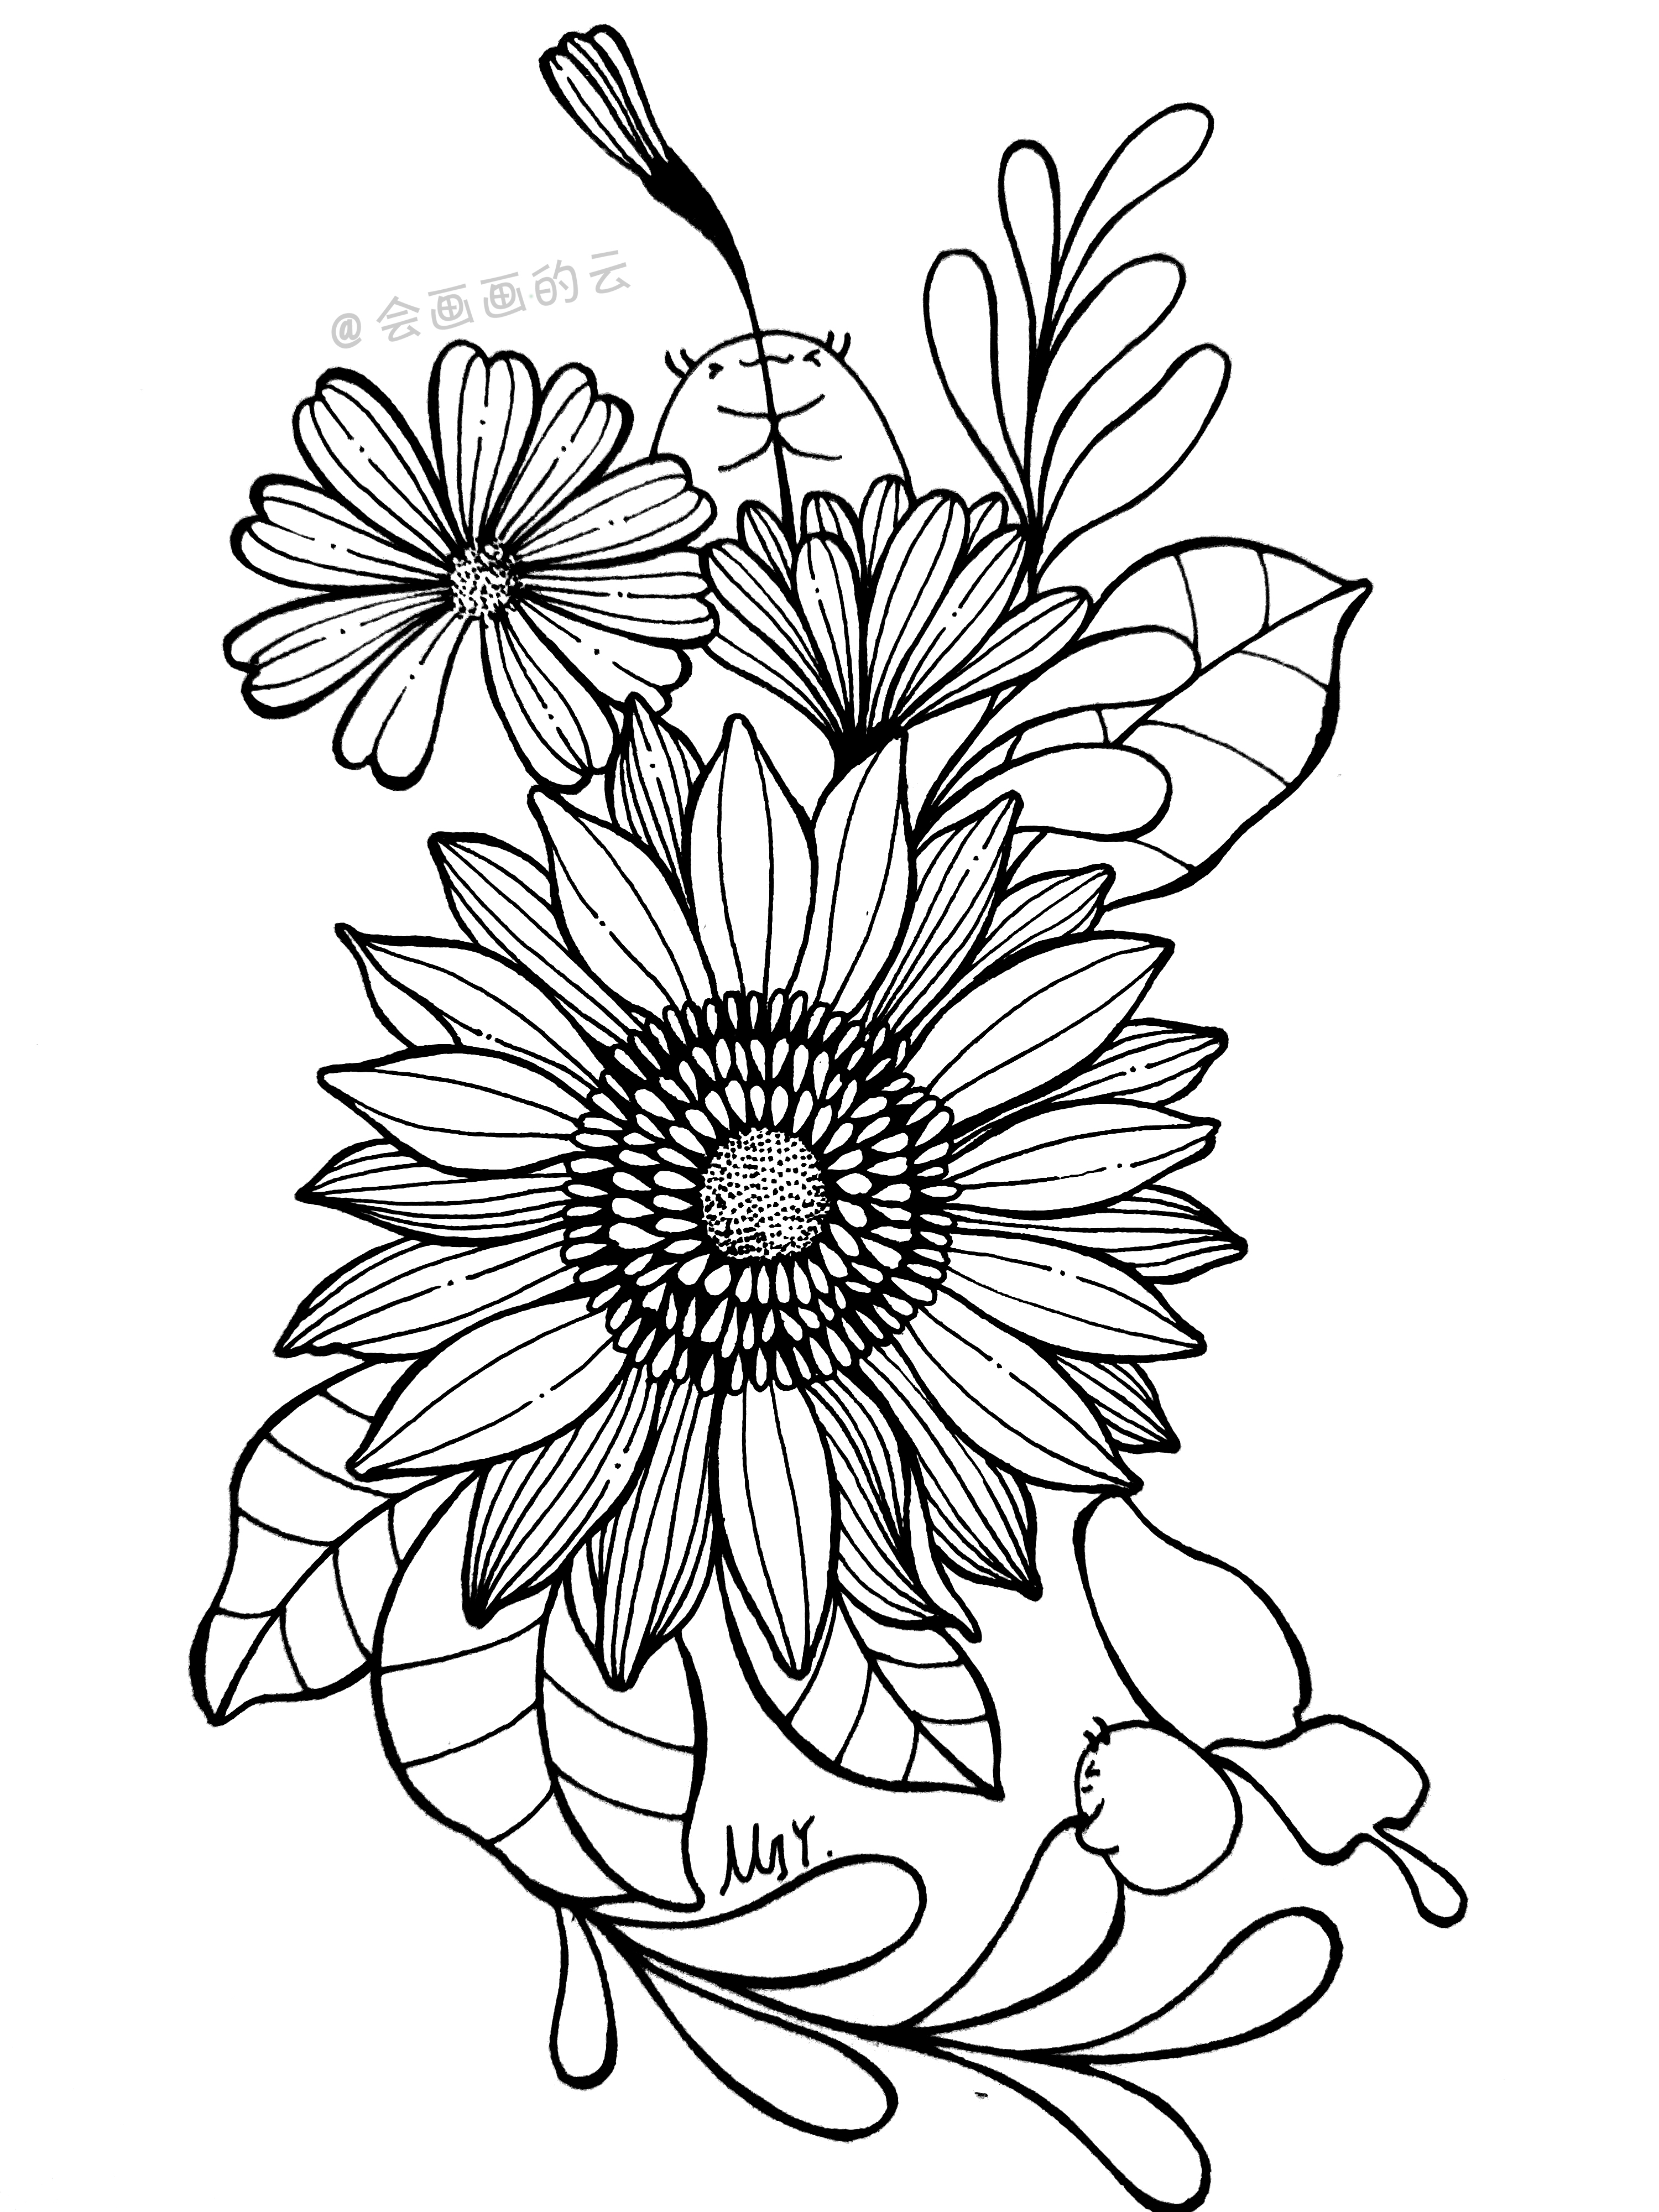 最常见的工具画出好看的花朵，零基础也可以画的简笔画，喜欢吗？